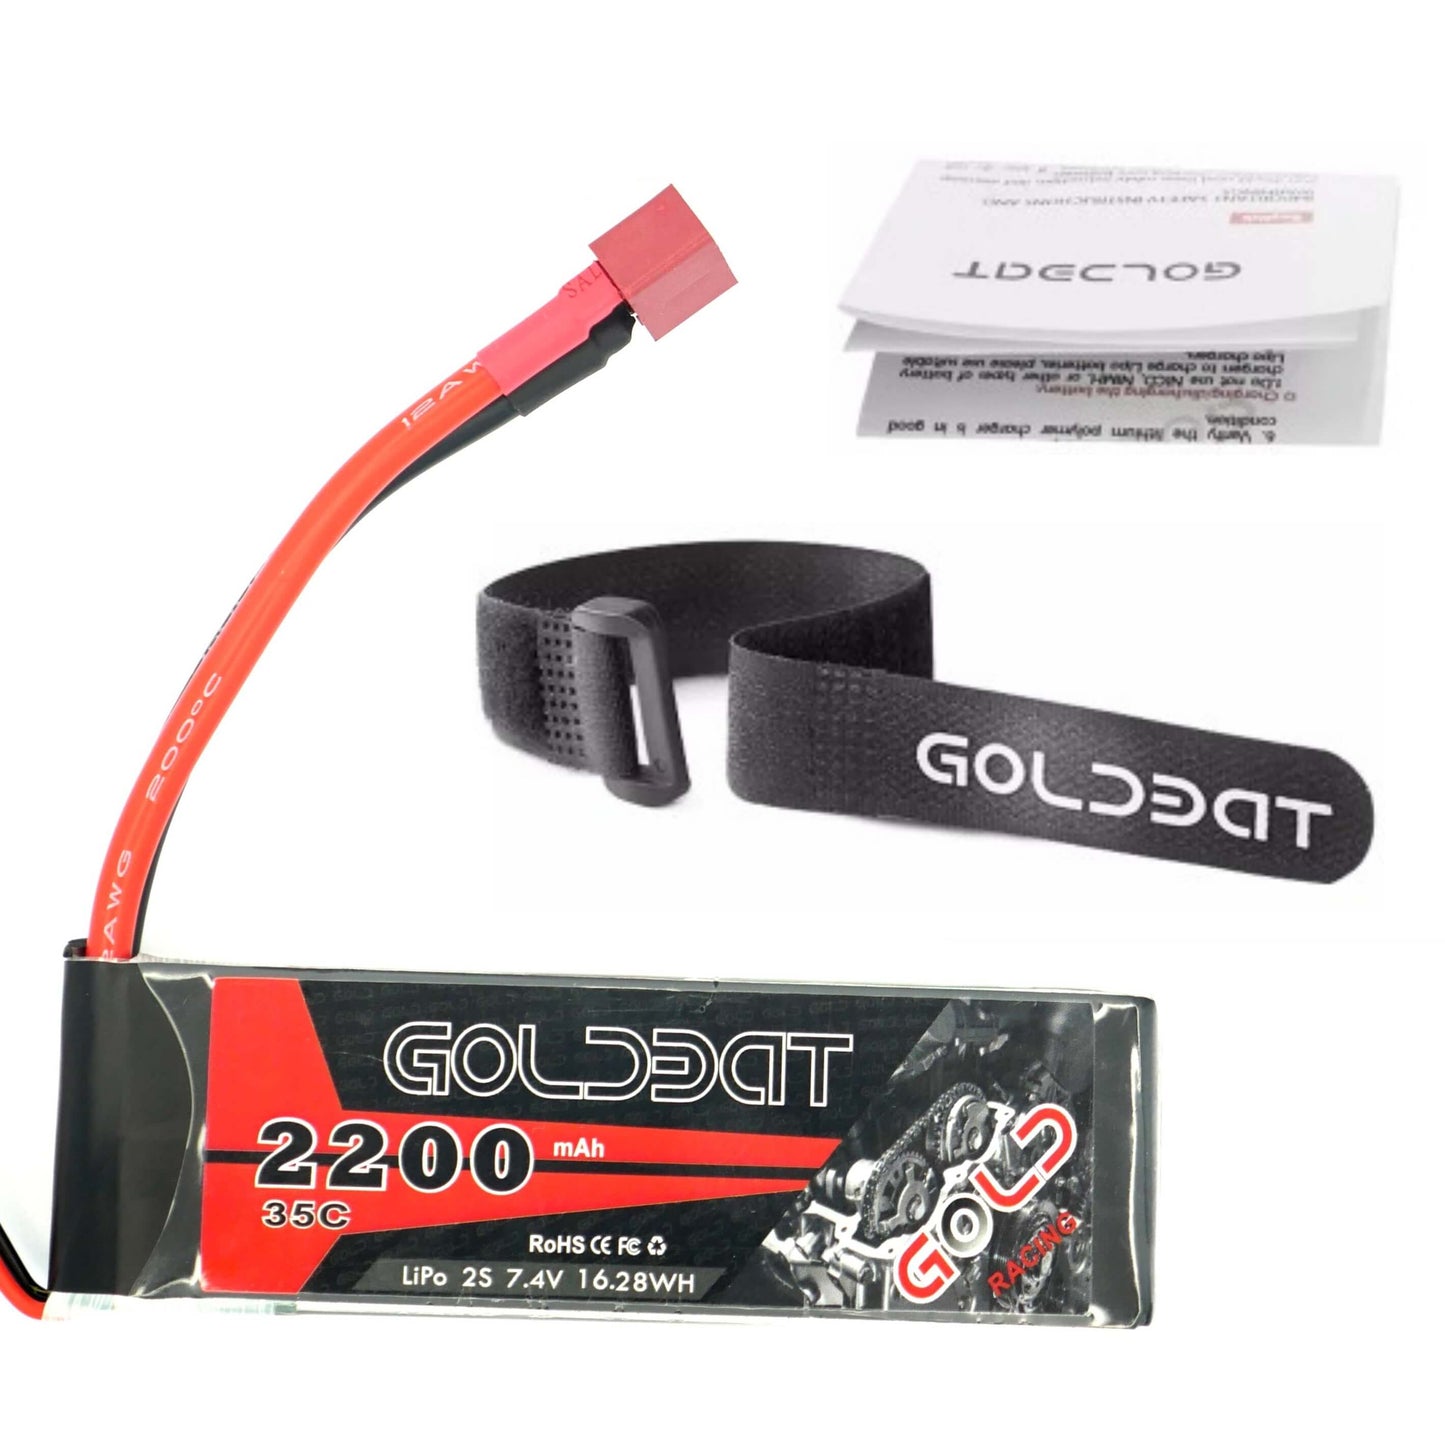 GoldBat 2200mAh 2S 7.4v 35C LiPo RC Battery